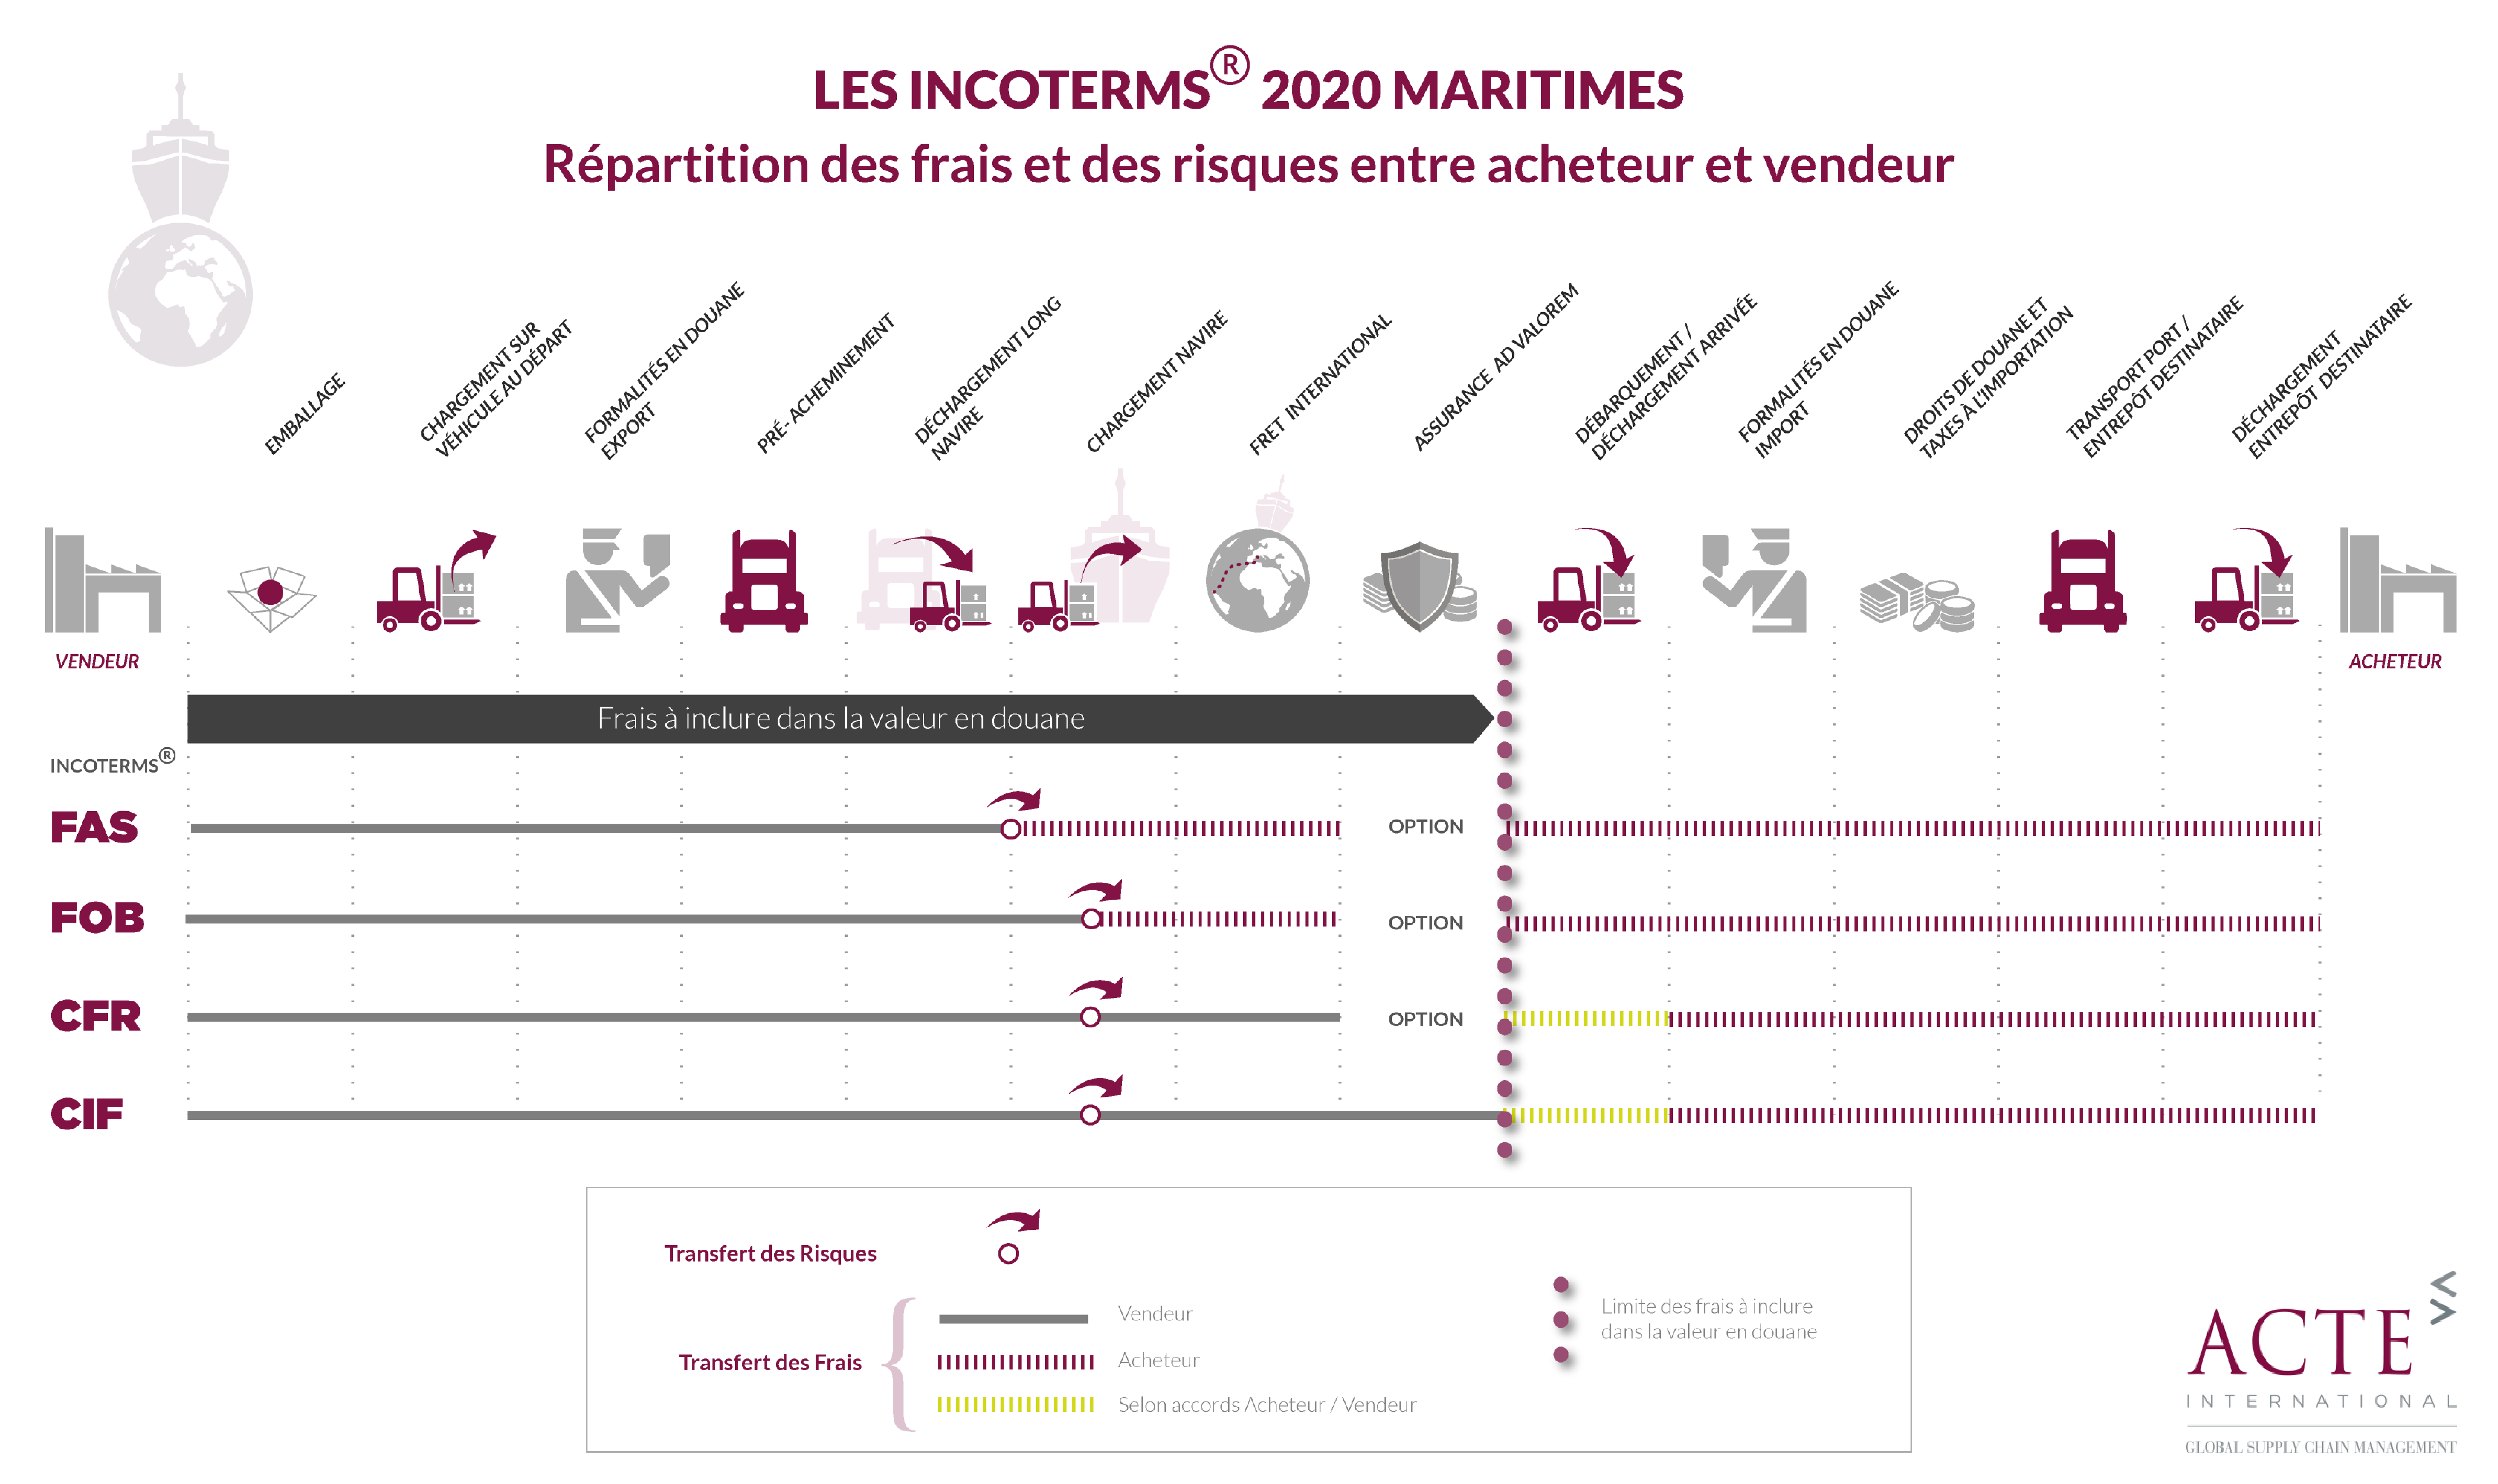 Les Incoterms 2020 maritimes - Répartition des frais et des risques entre acheteurs et vendeurs (infographie)